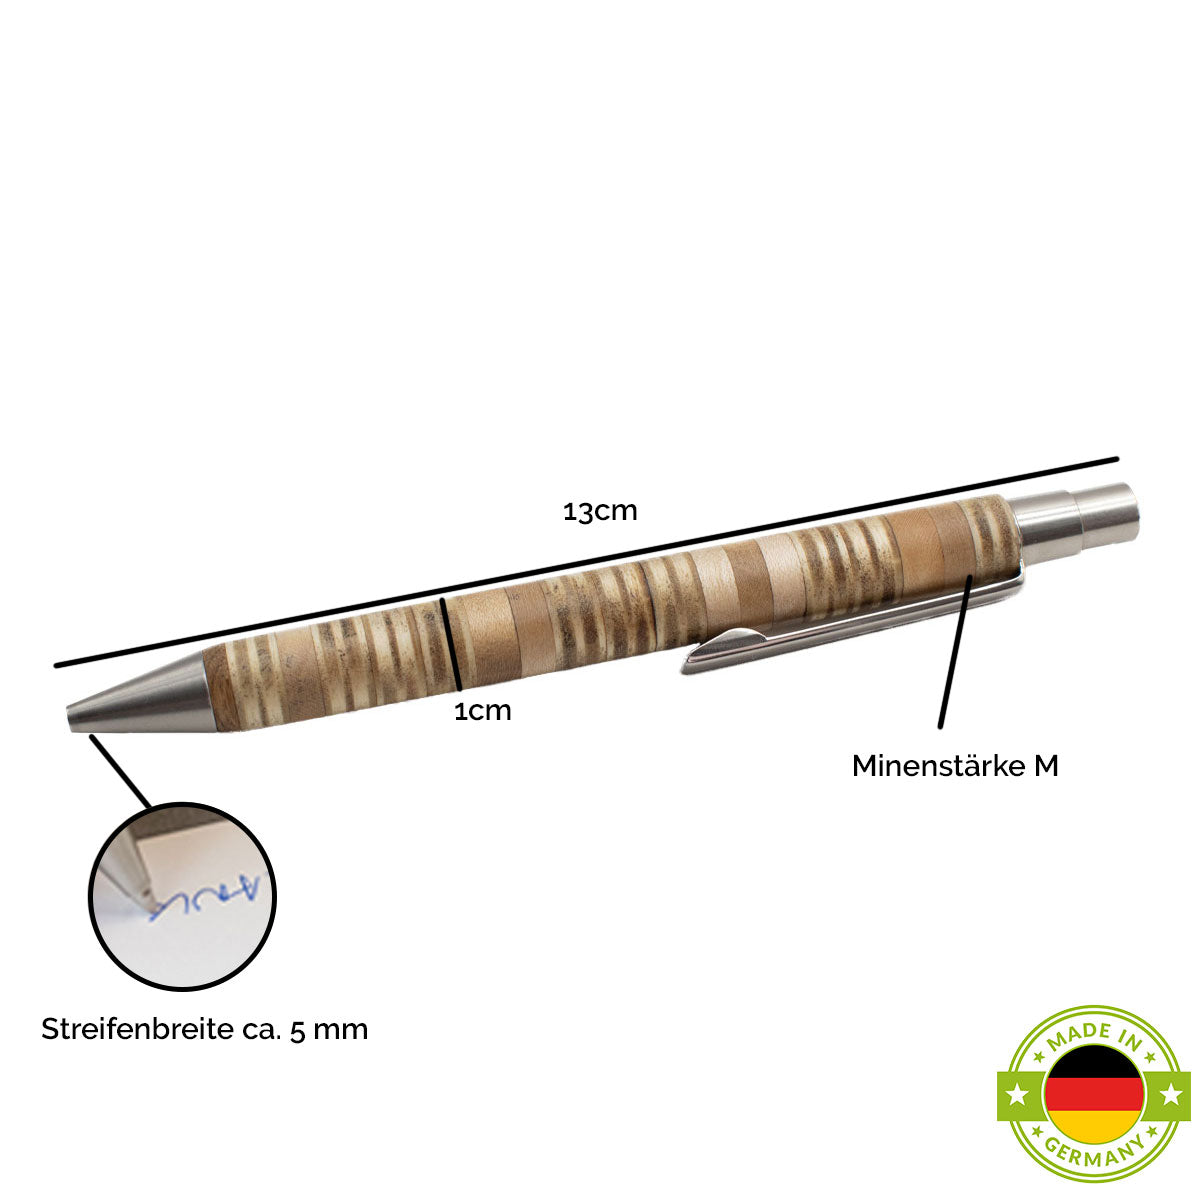 Unverwechselbarer Kugelschreiber 'Patchwork' aus verschiedensten Holzstücken im Streifenlook